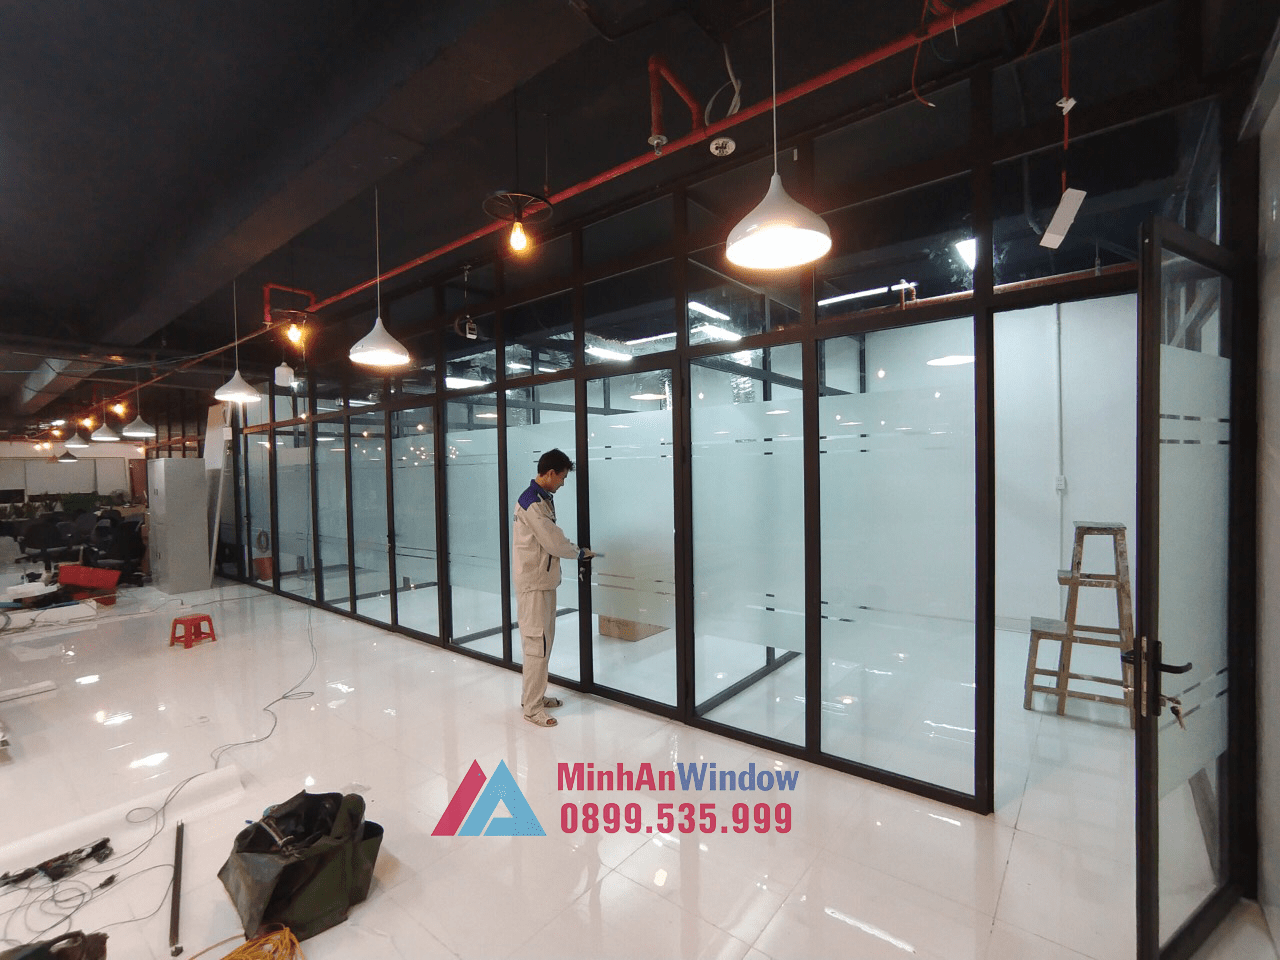 Thợ thi công của Minh An Window tiến hành kiểm tra và bàn giao cửa nhôm kính cho khách hàng tại Lam Sơn - Thanh Hóa